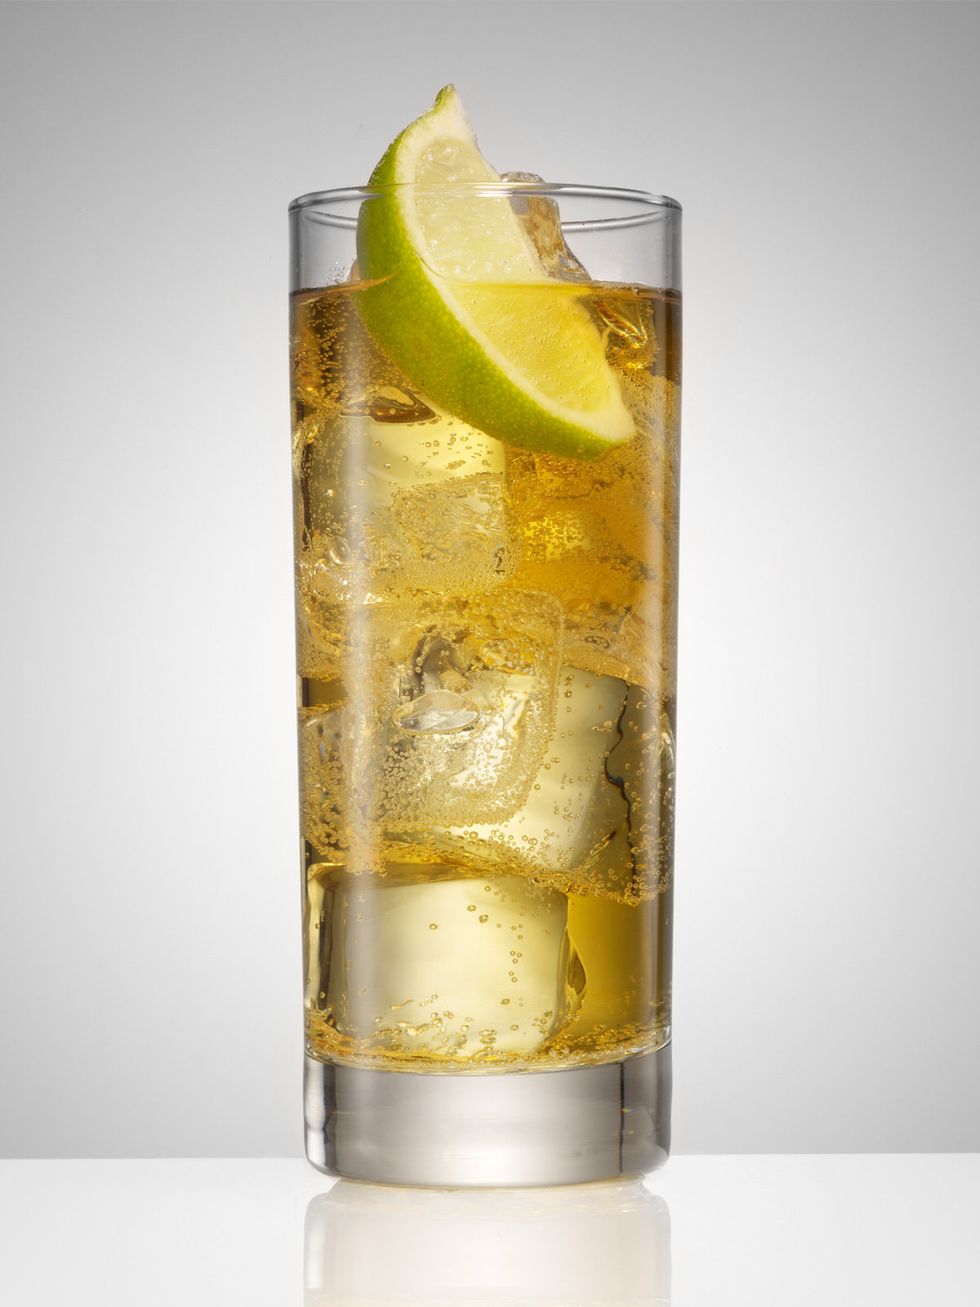 Liquid, Fluid, Drink, Lemon, Citrus, Glass, Cocktail, Fruit, Classic cocktail, Meyer lemon, 